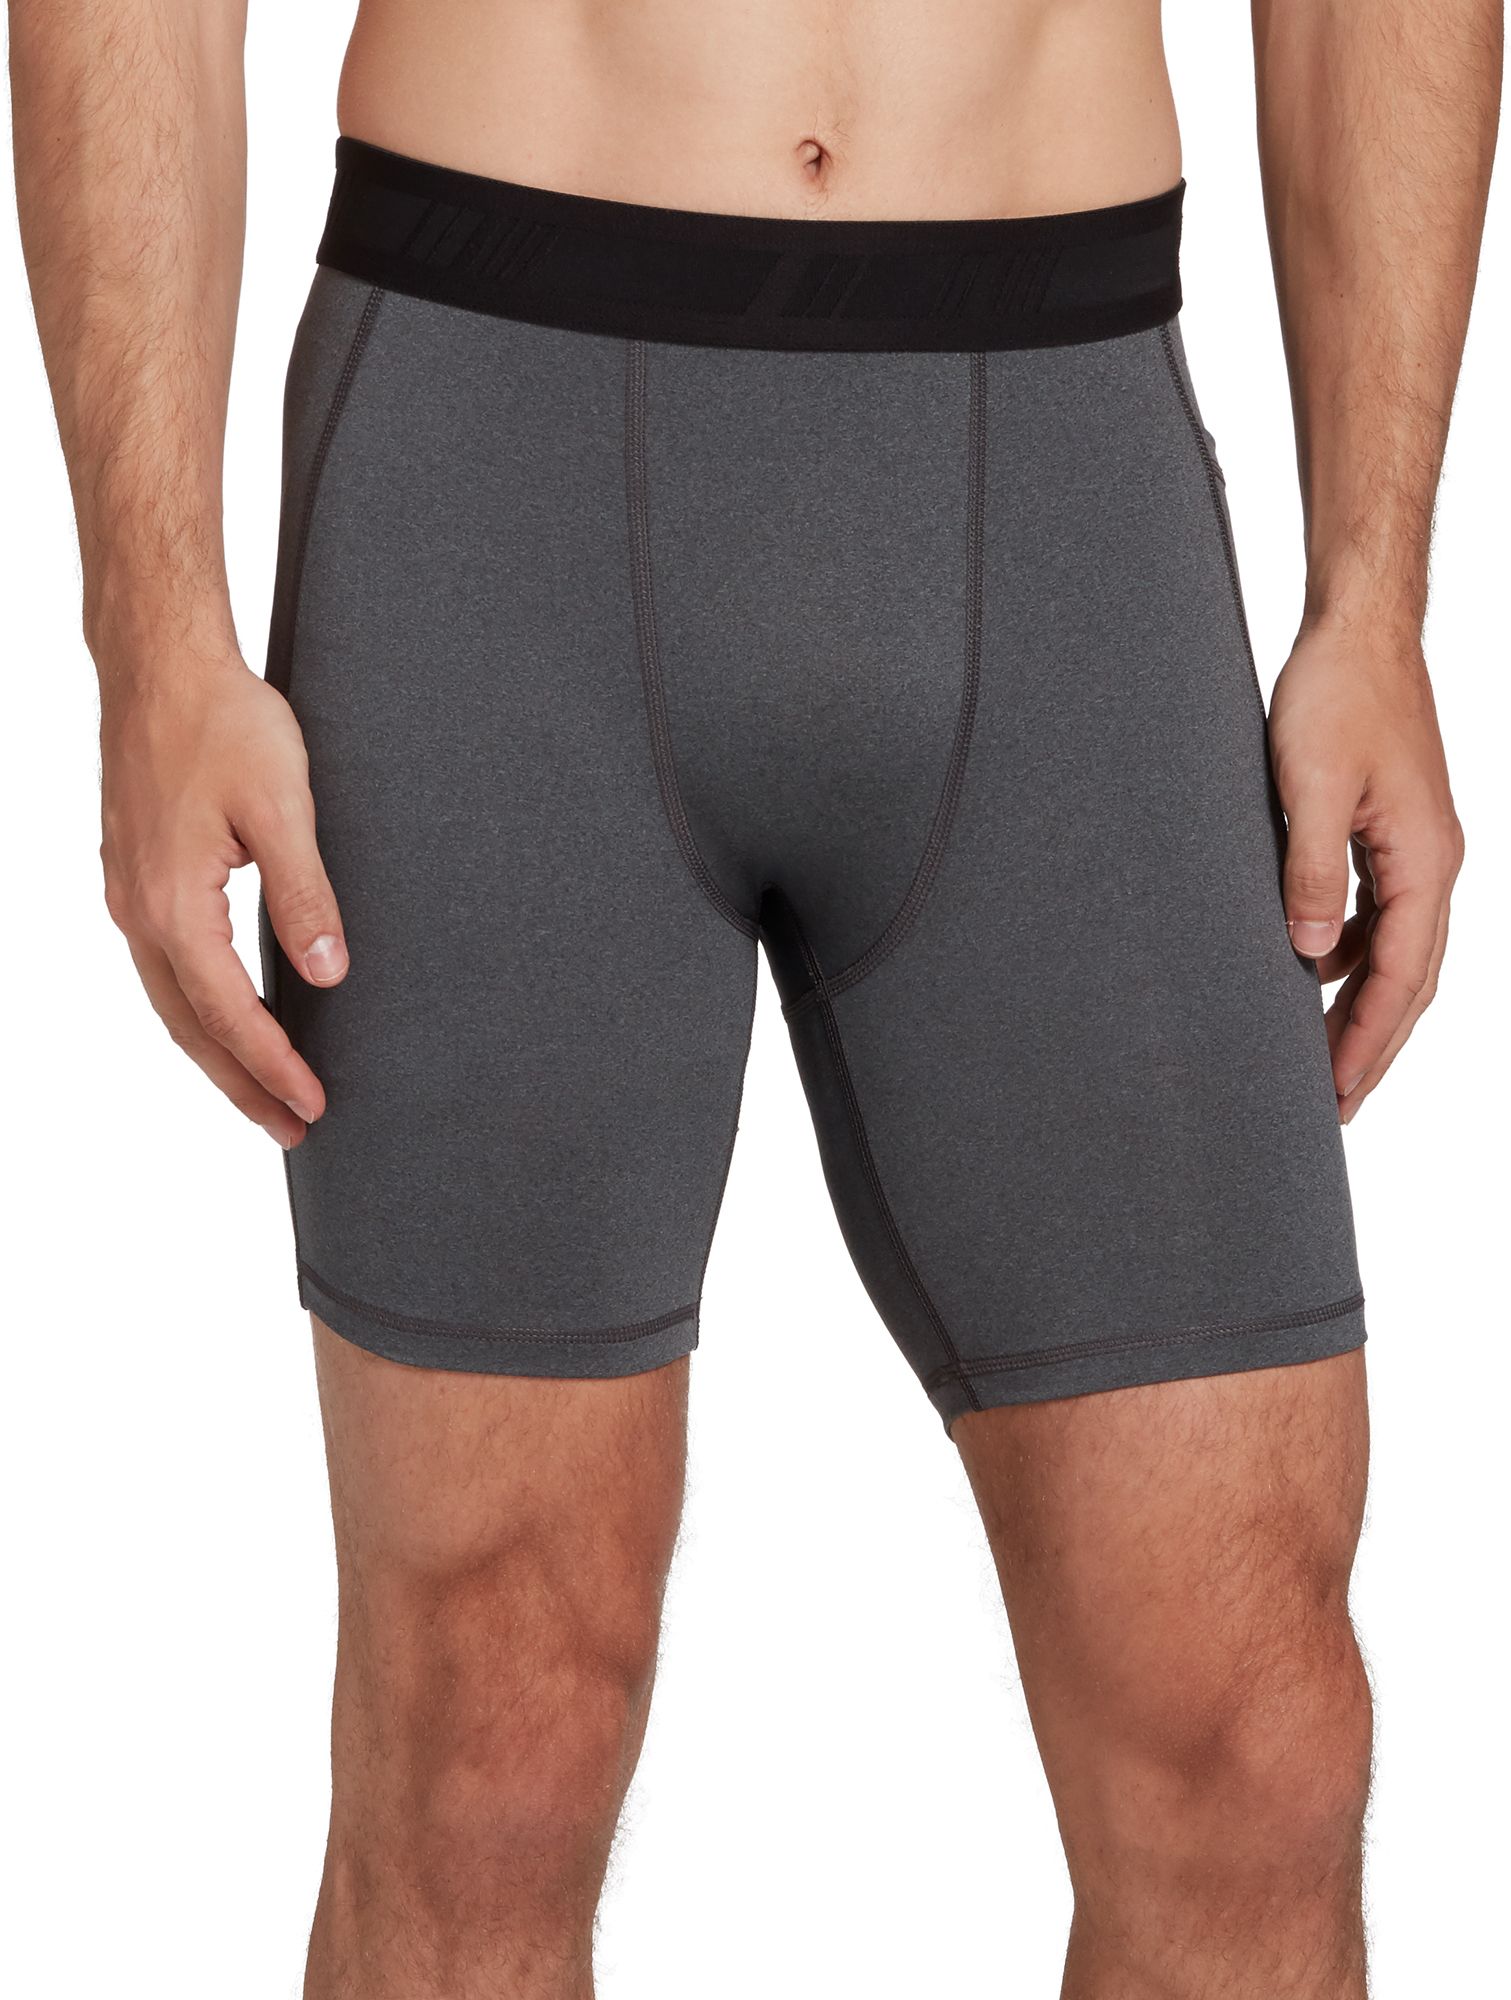 nike compression shorts pocket